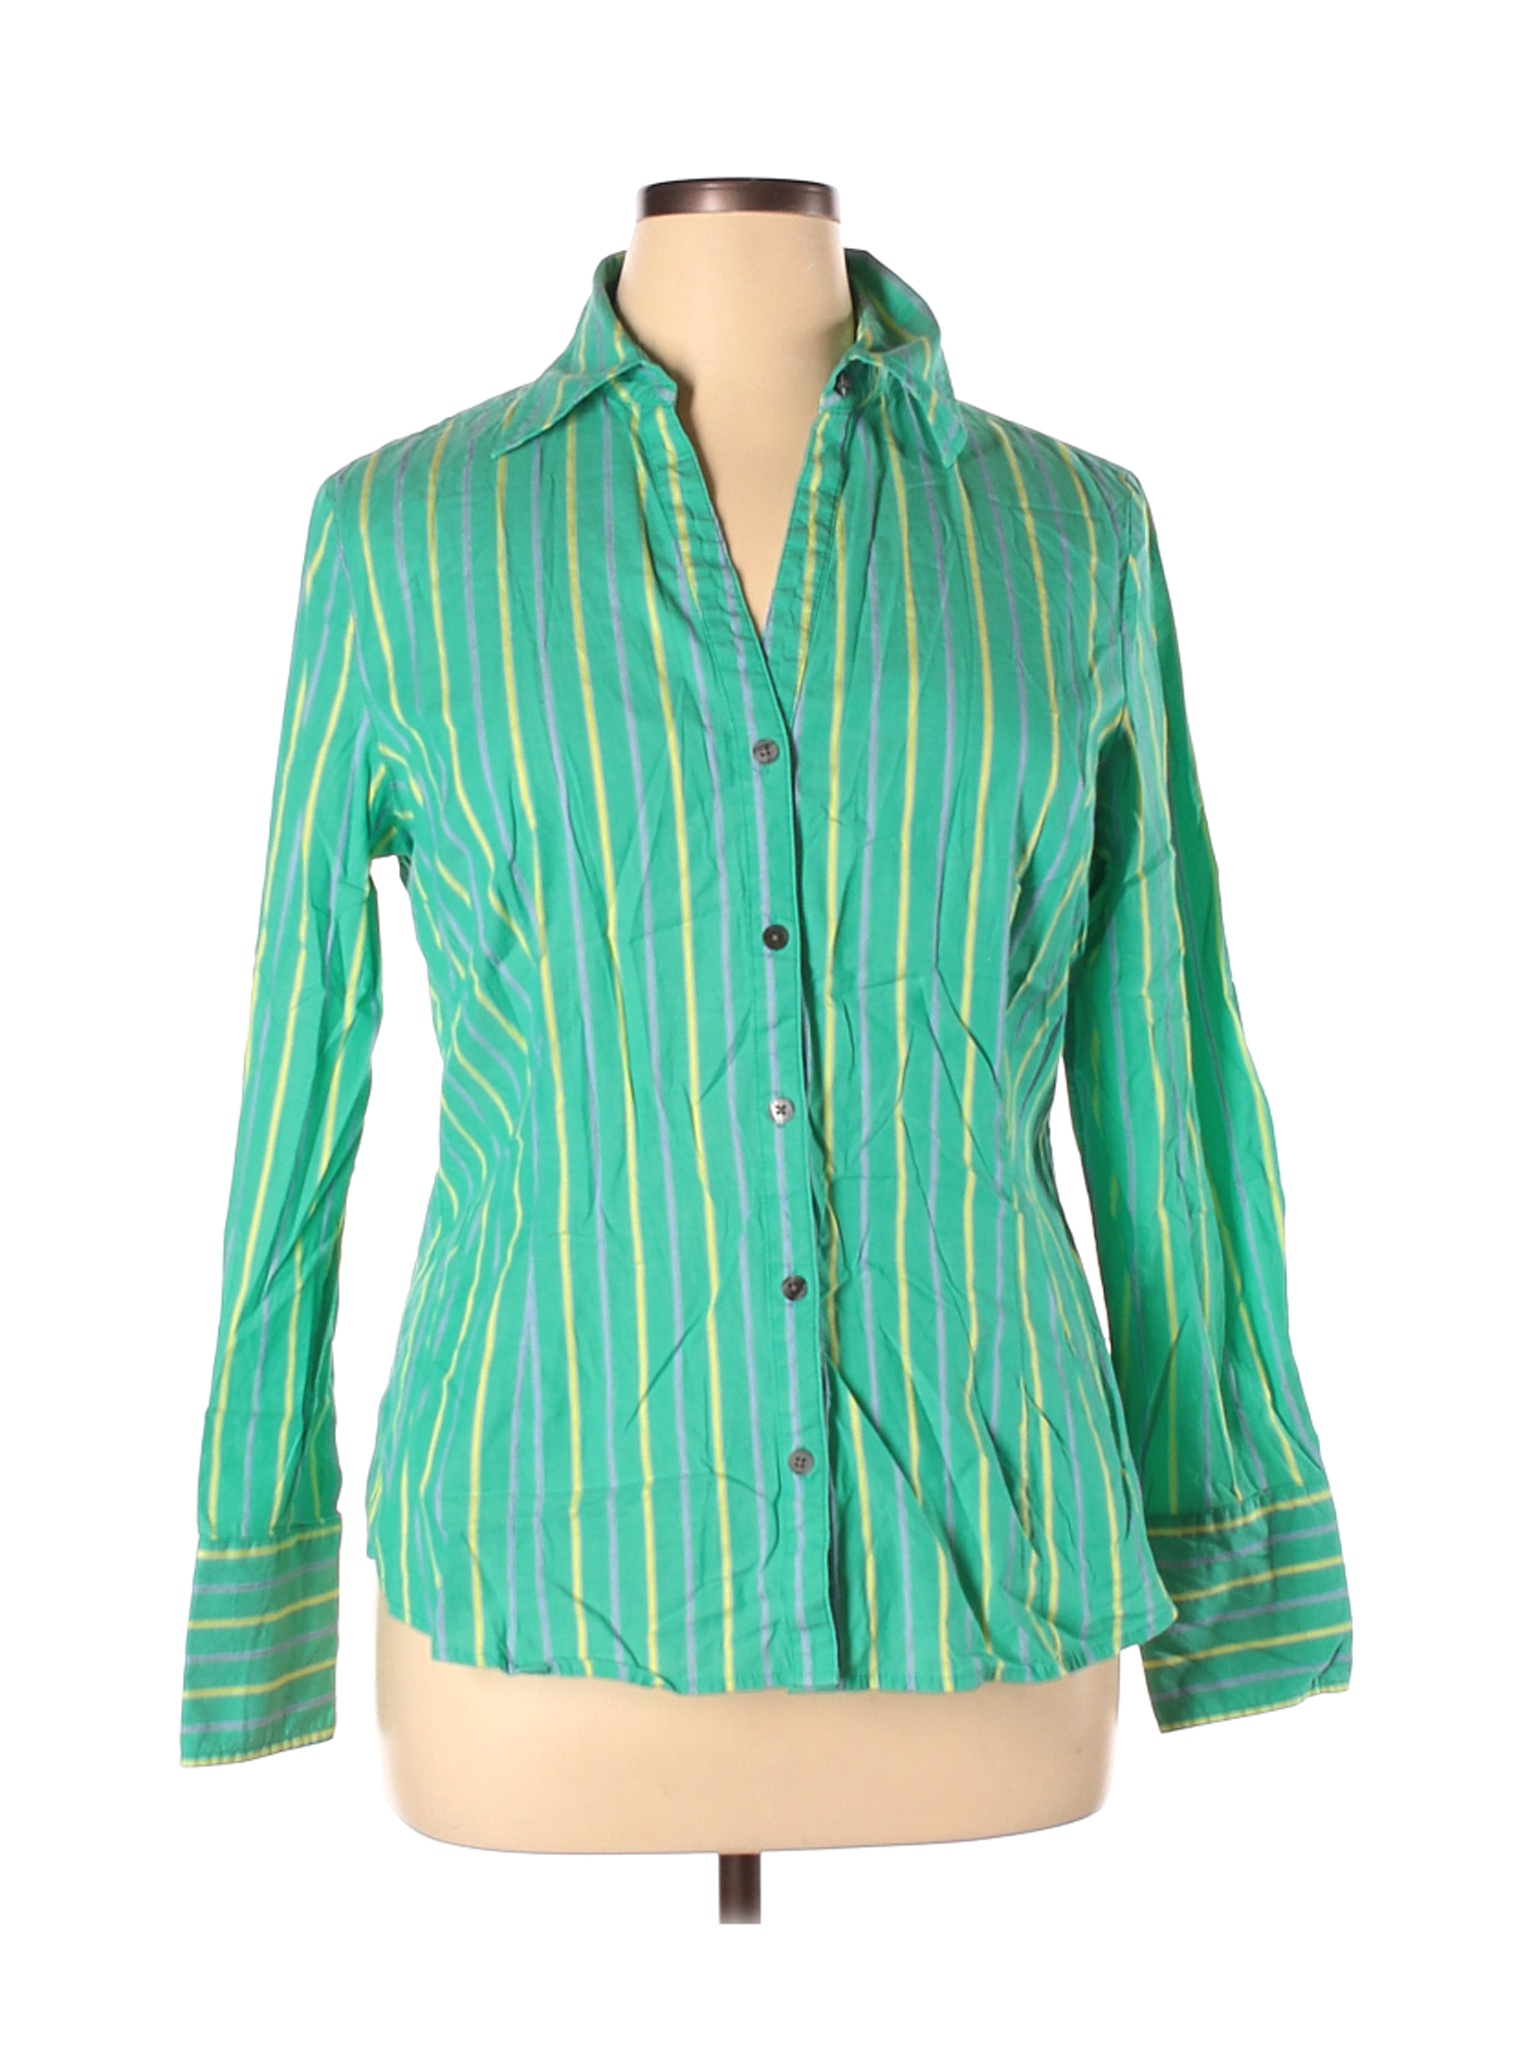 Attention Women Green Long Sleeve Button-Down Shirt XL | eBay